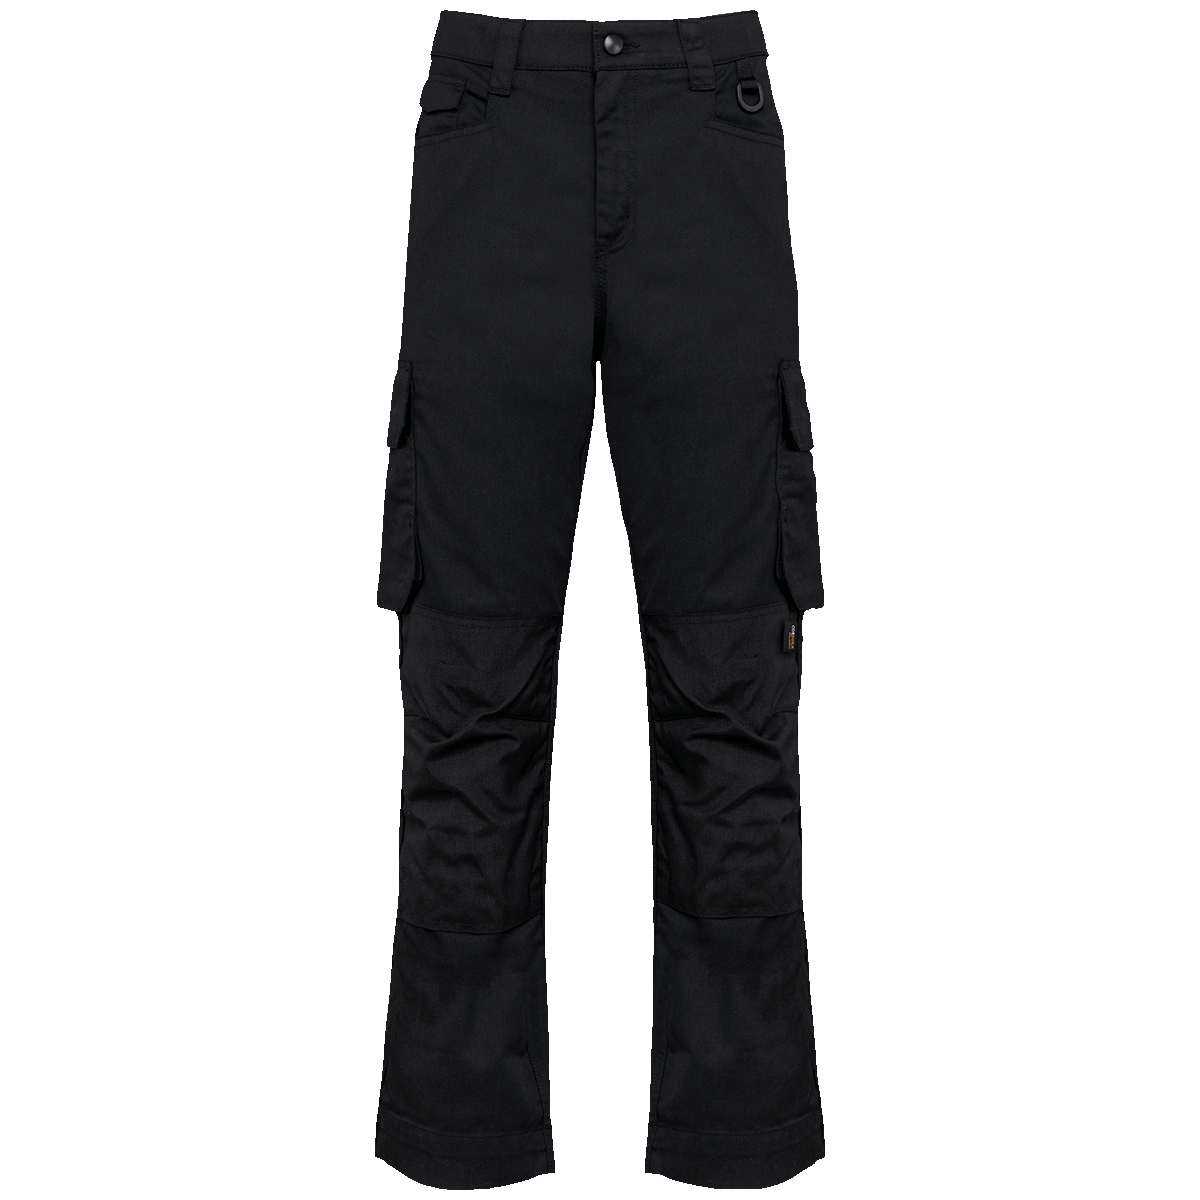 Pantalon De Travail Bicolore Homme À Personnaliser Navy / Black